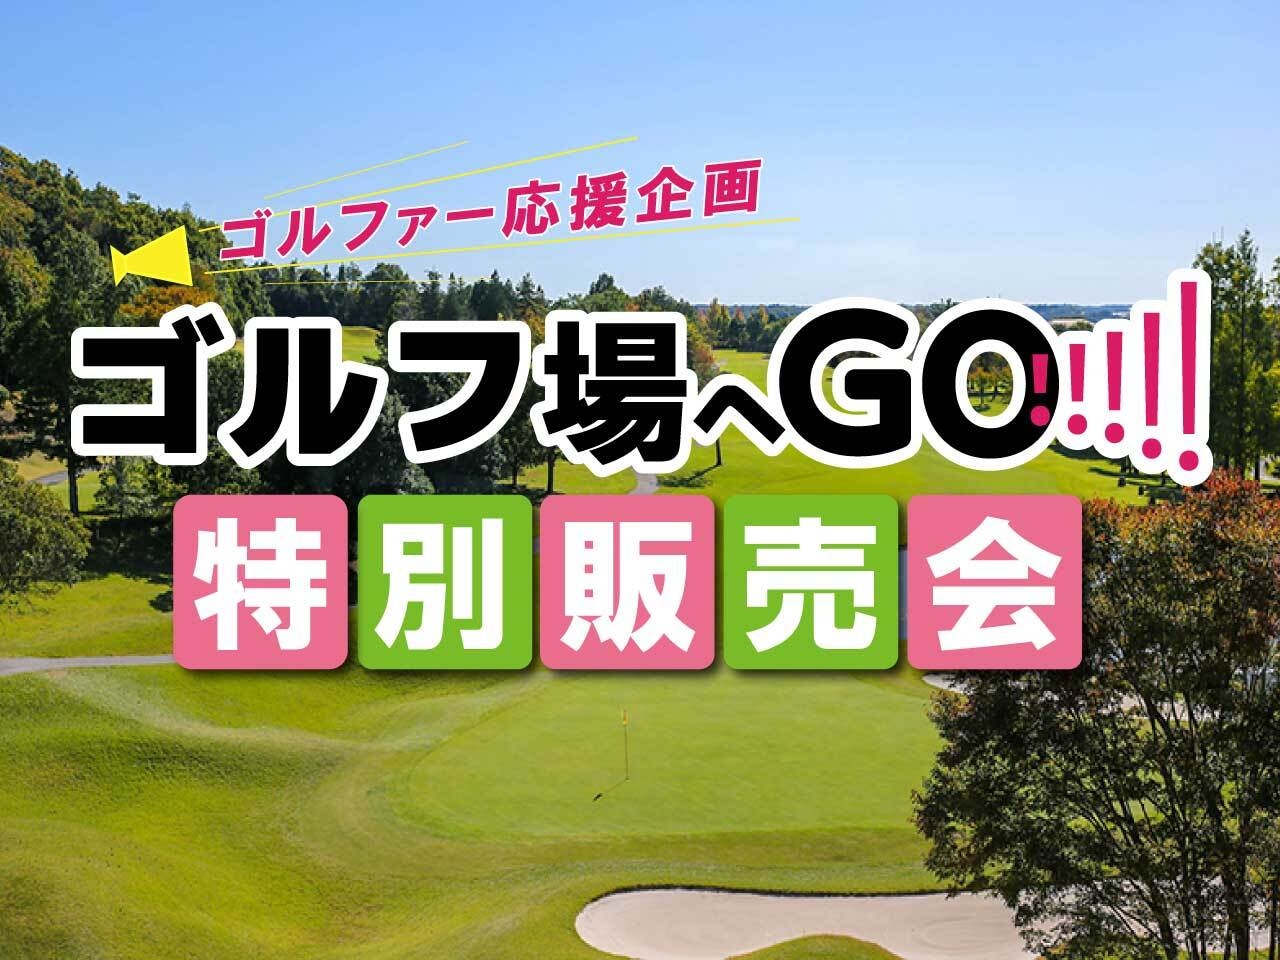 ゴルフ場へGO!!!!! 特別販売会 公式サイト